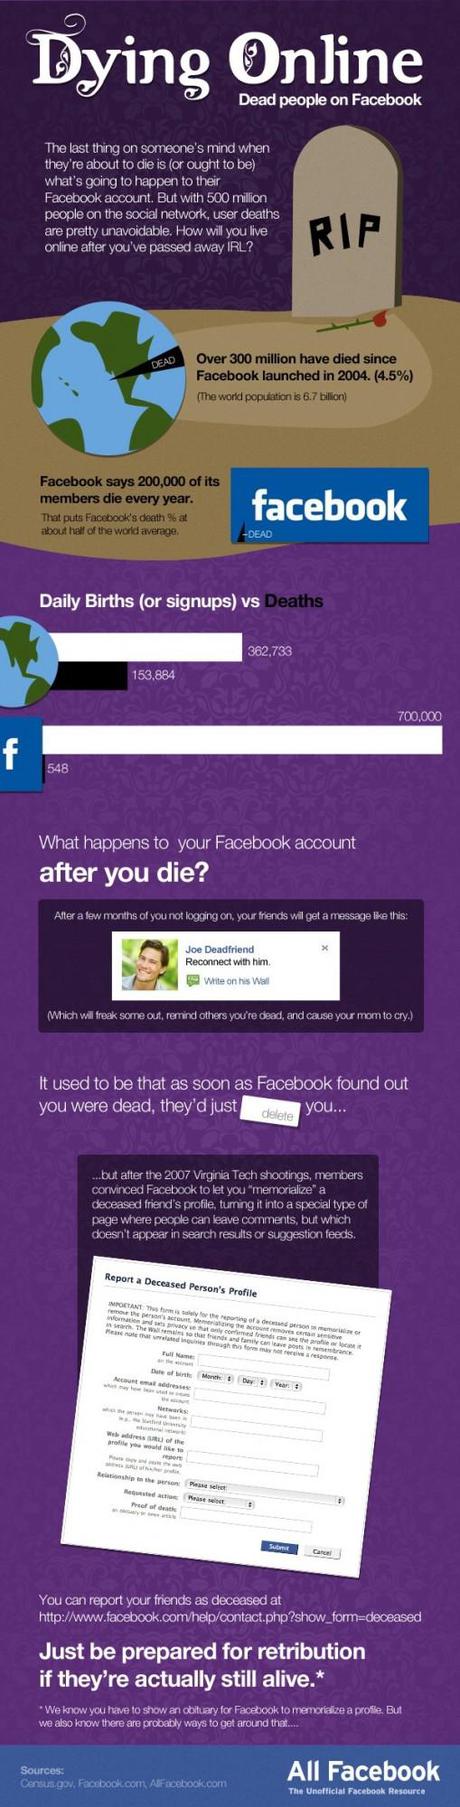 mort sur facebook 509x2000 La mort sur Facebook en quelques chiffres et faits